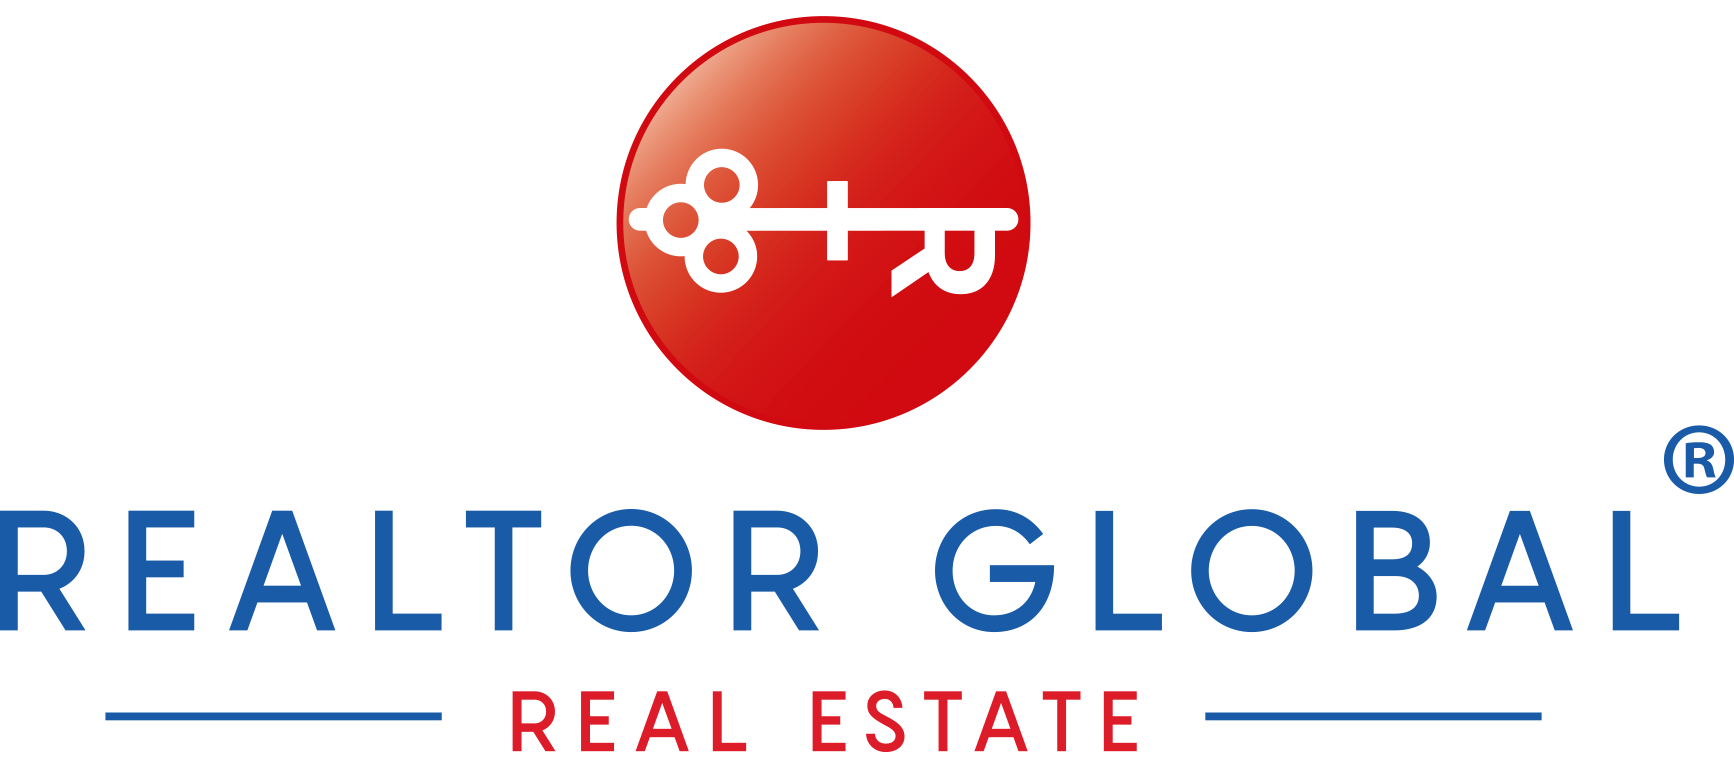 Realtor Global - Customer Relationship Management System